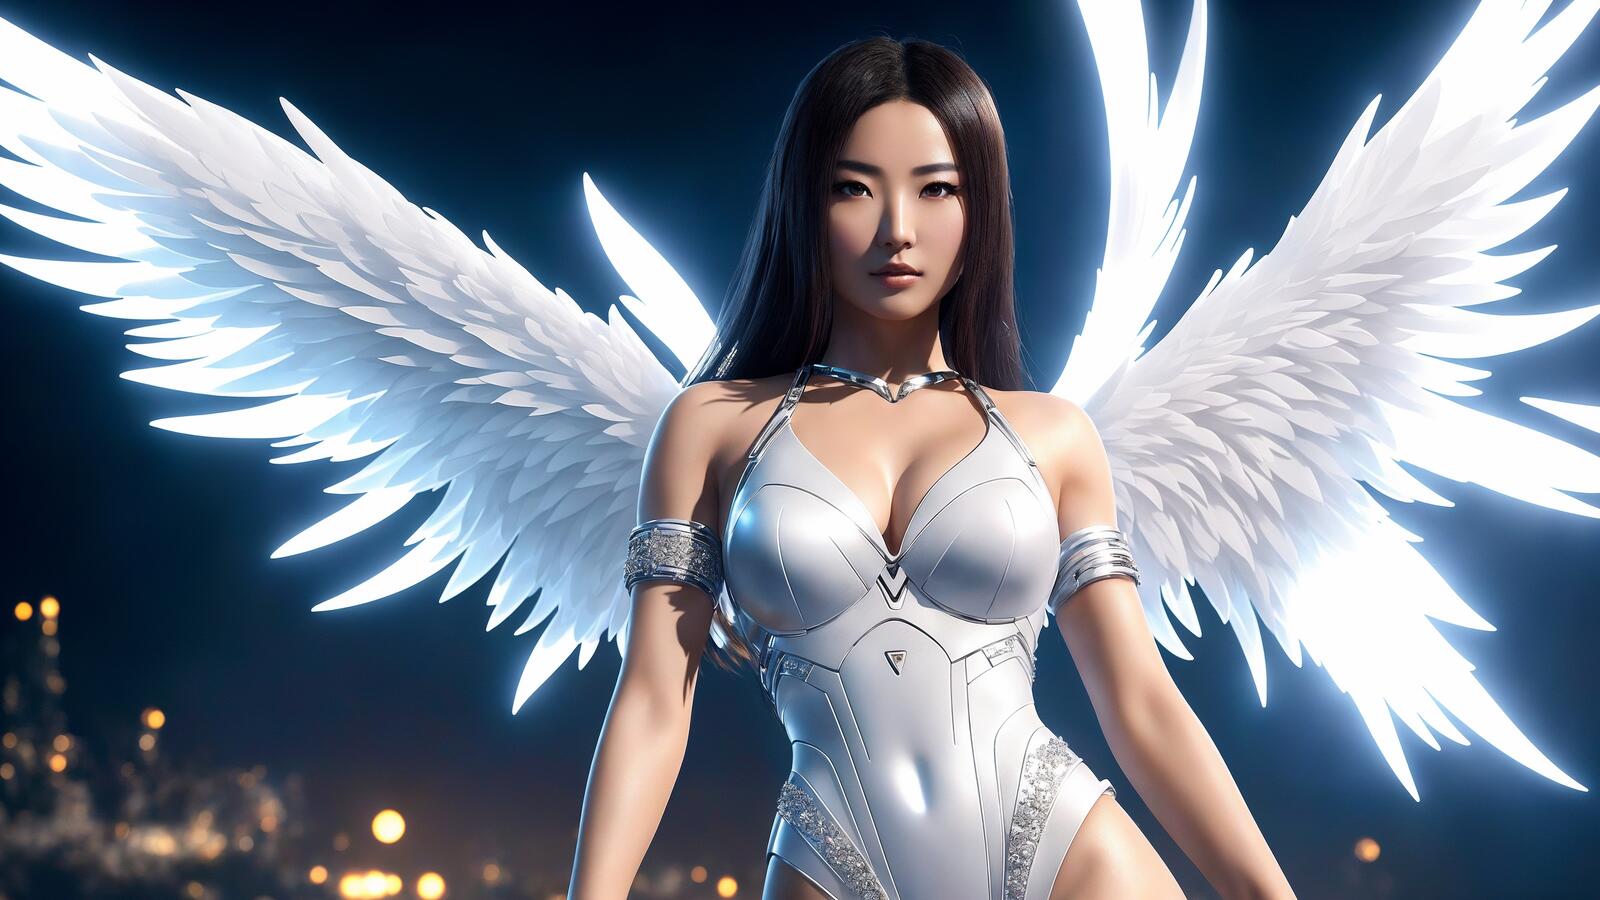 Бесплатное фото Ангел с азиатской внешностью